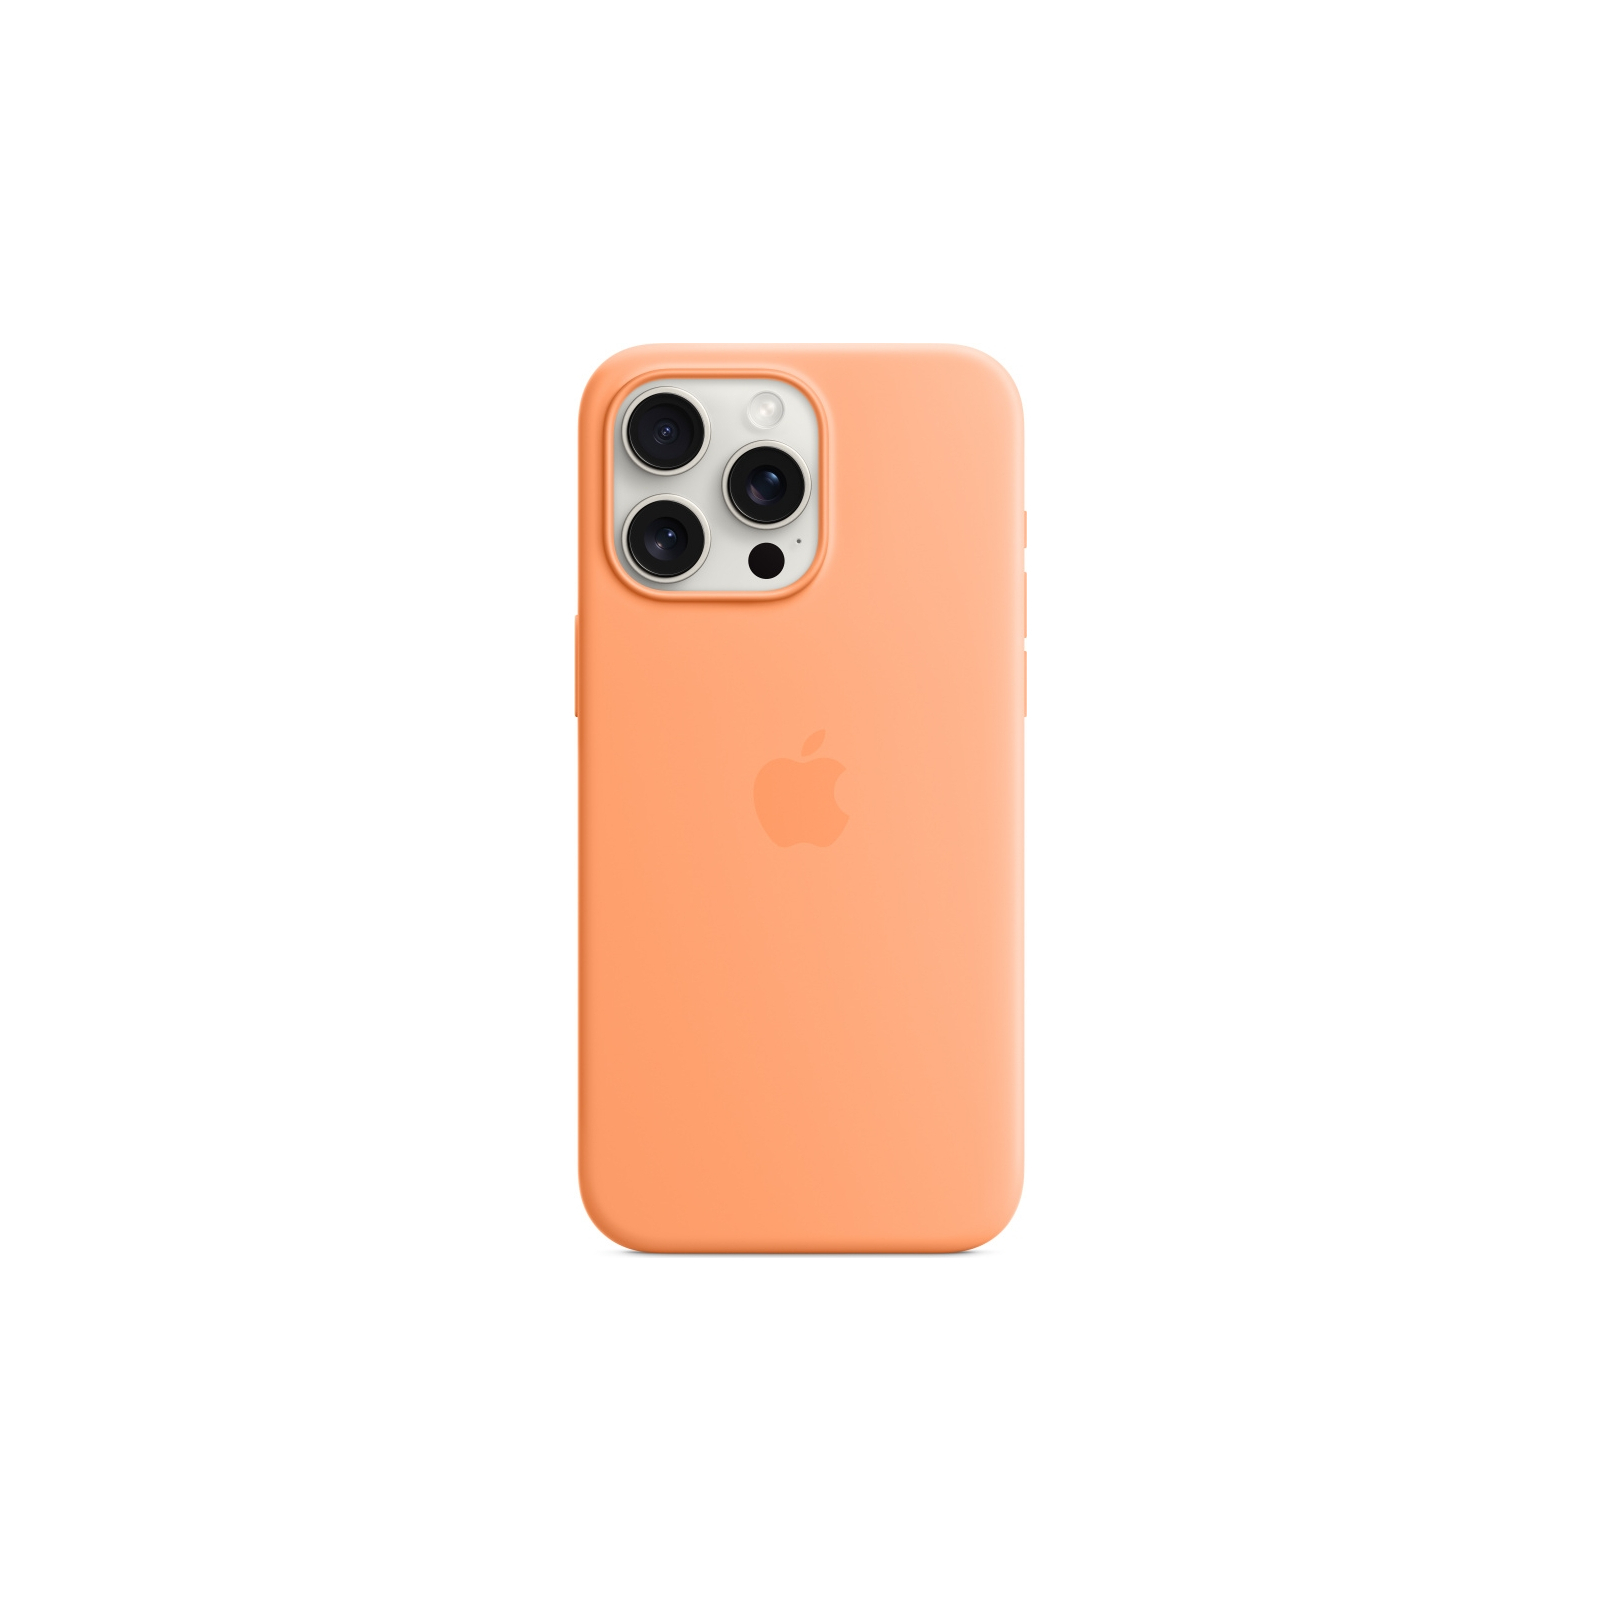 Чехол для мобильного телефона Apple iPhone 15 Pro Max Silicone Case with MagSafe Storm Blue (MT1P3ZM/A) изображение 3